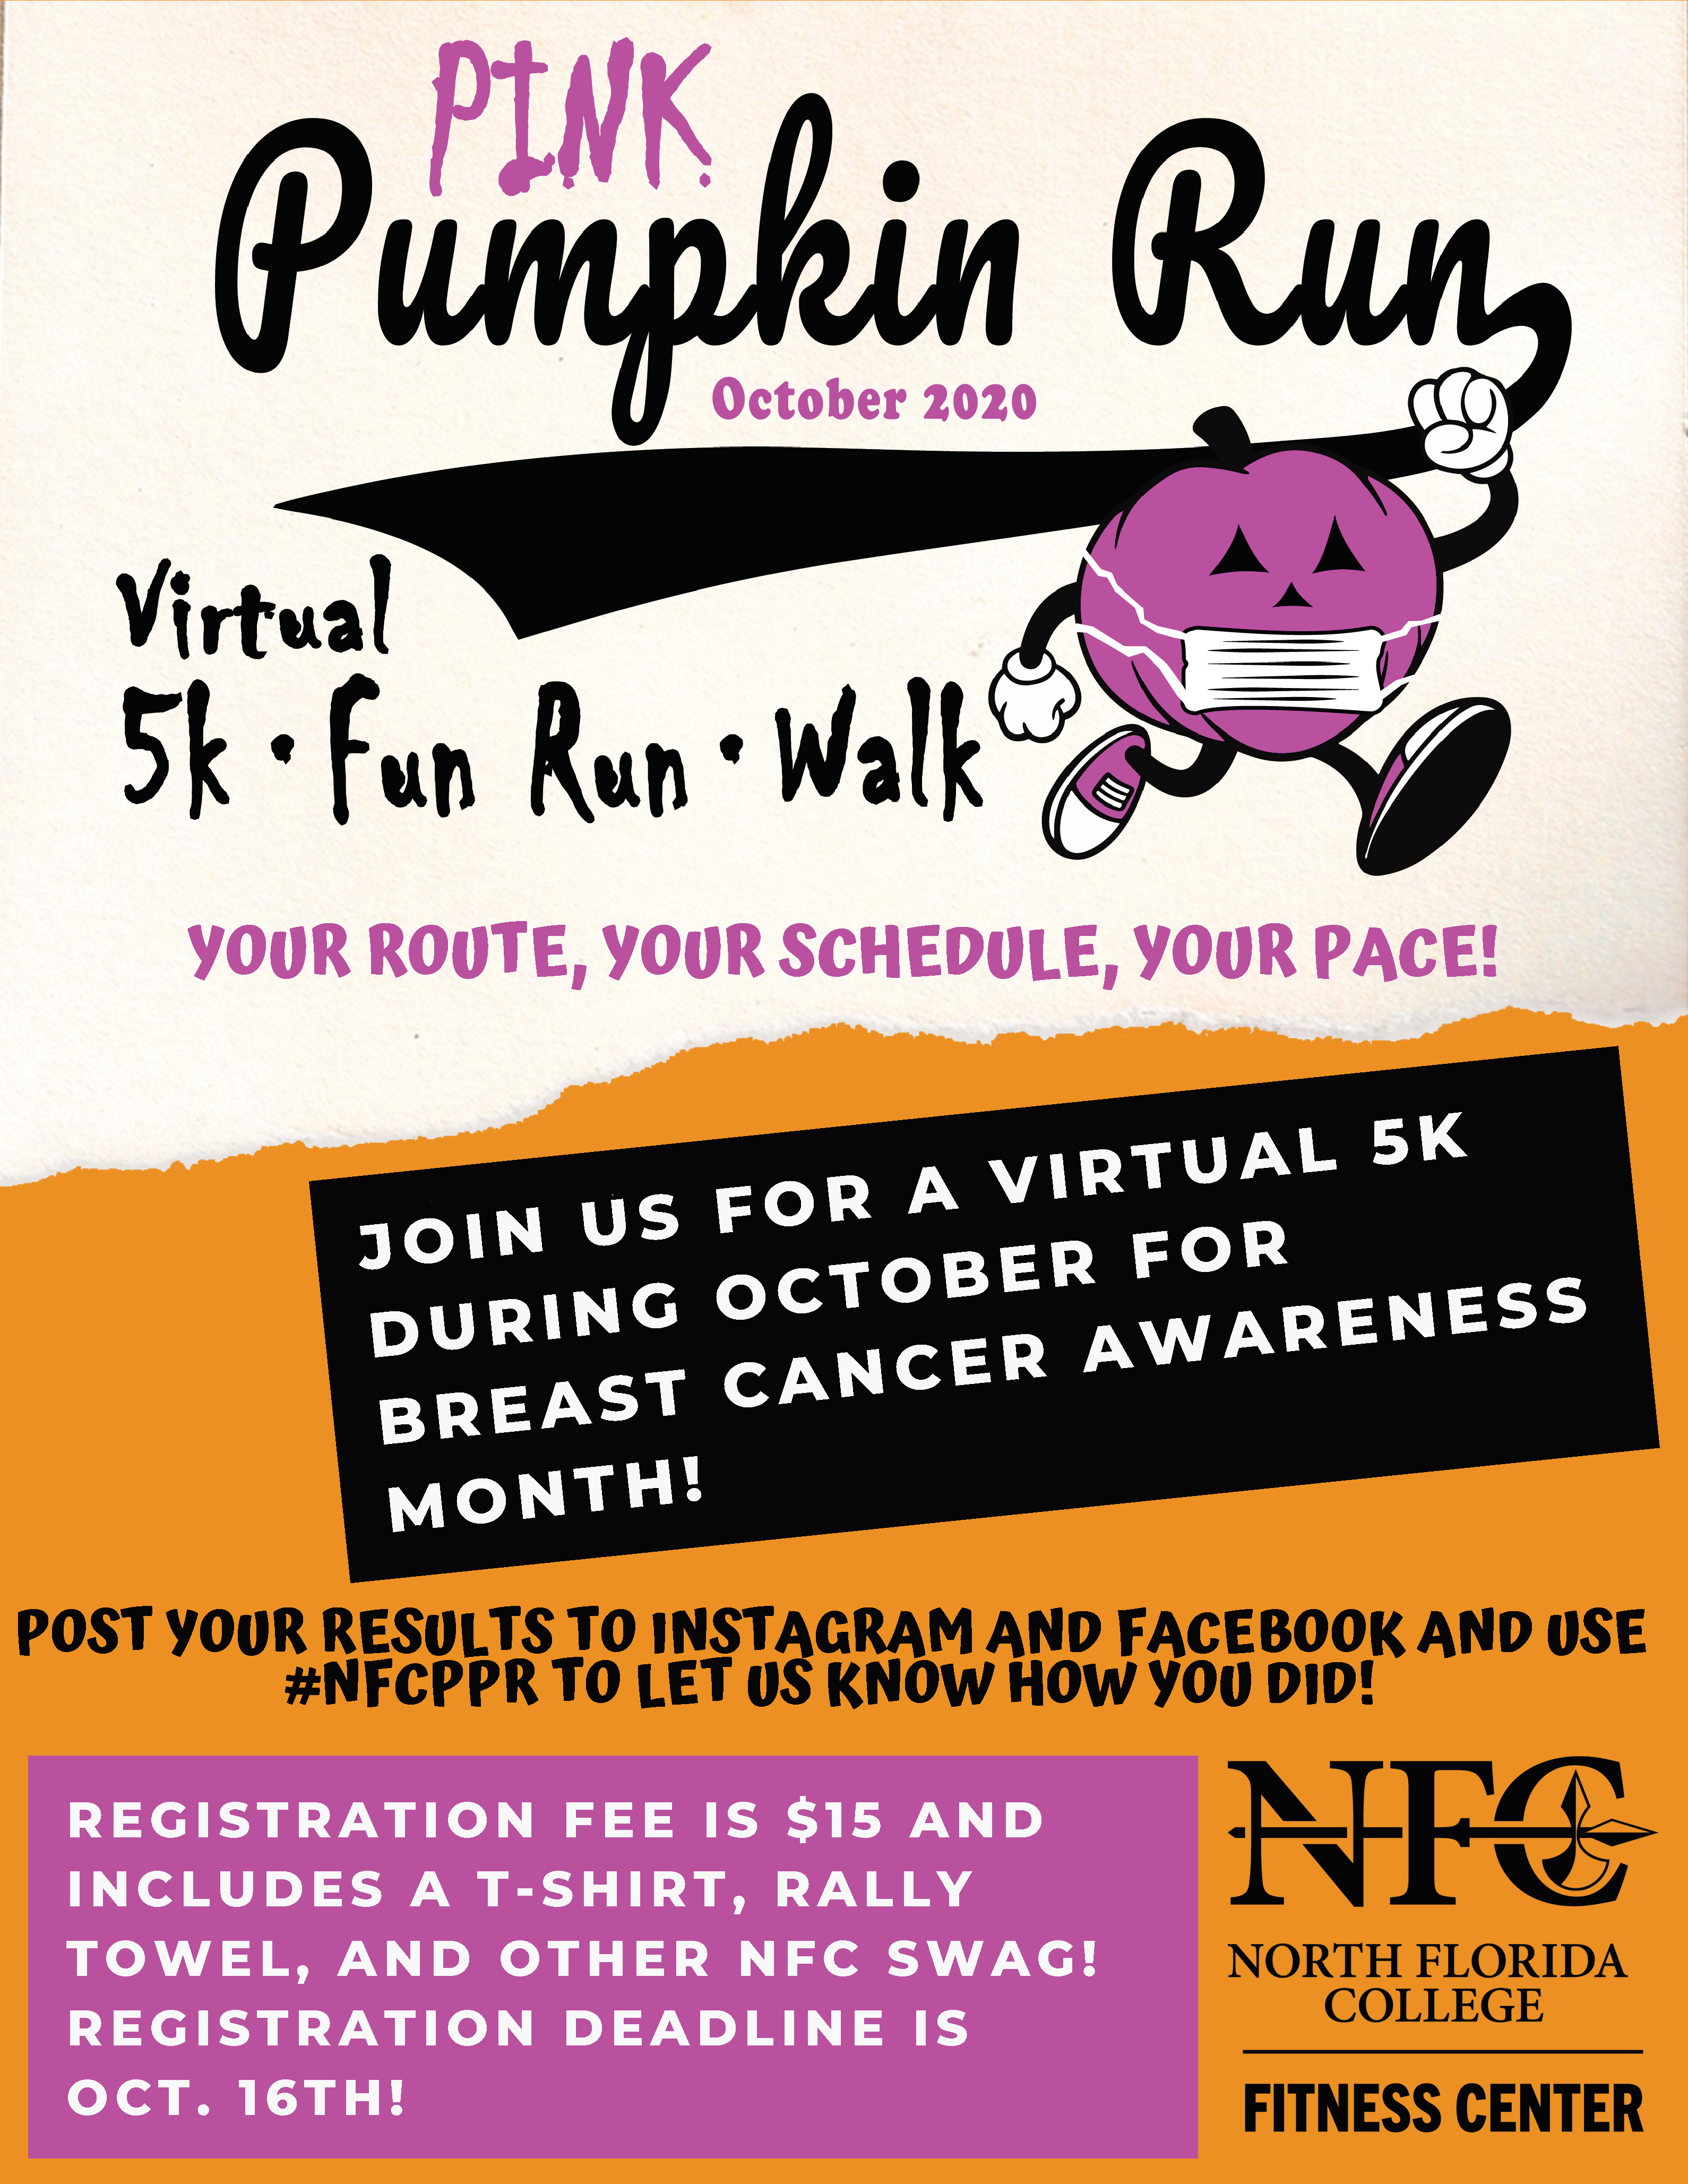 NFC Hosts Pink Pumpkin Run Virtual 5K